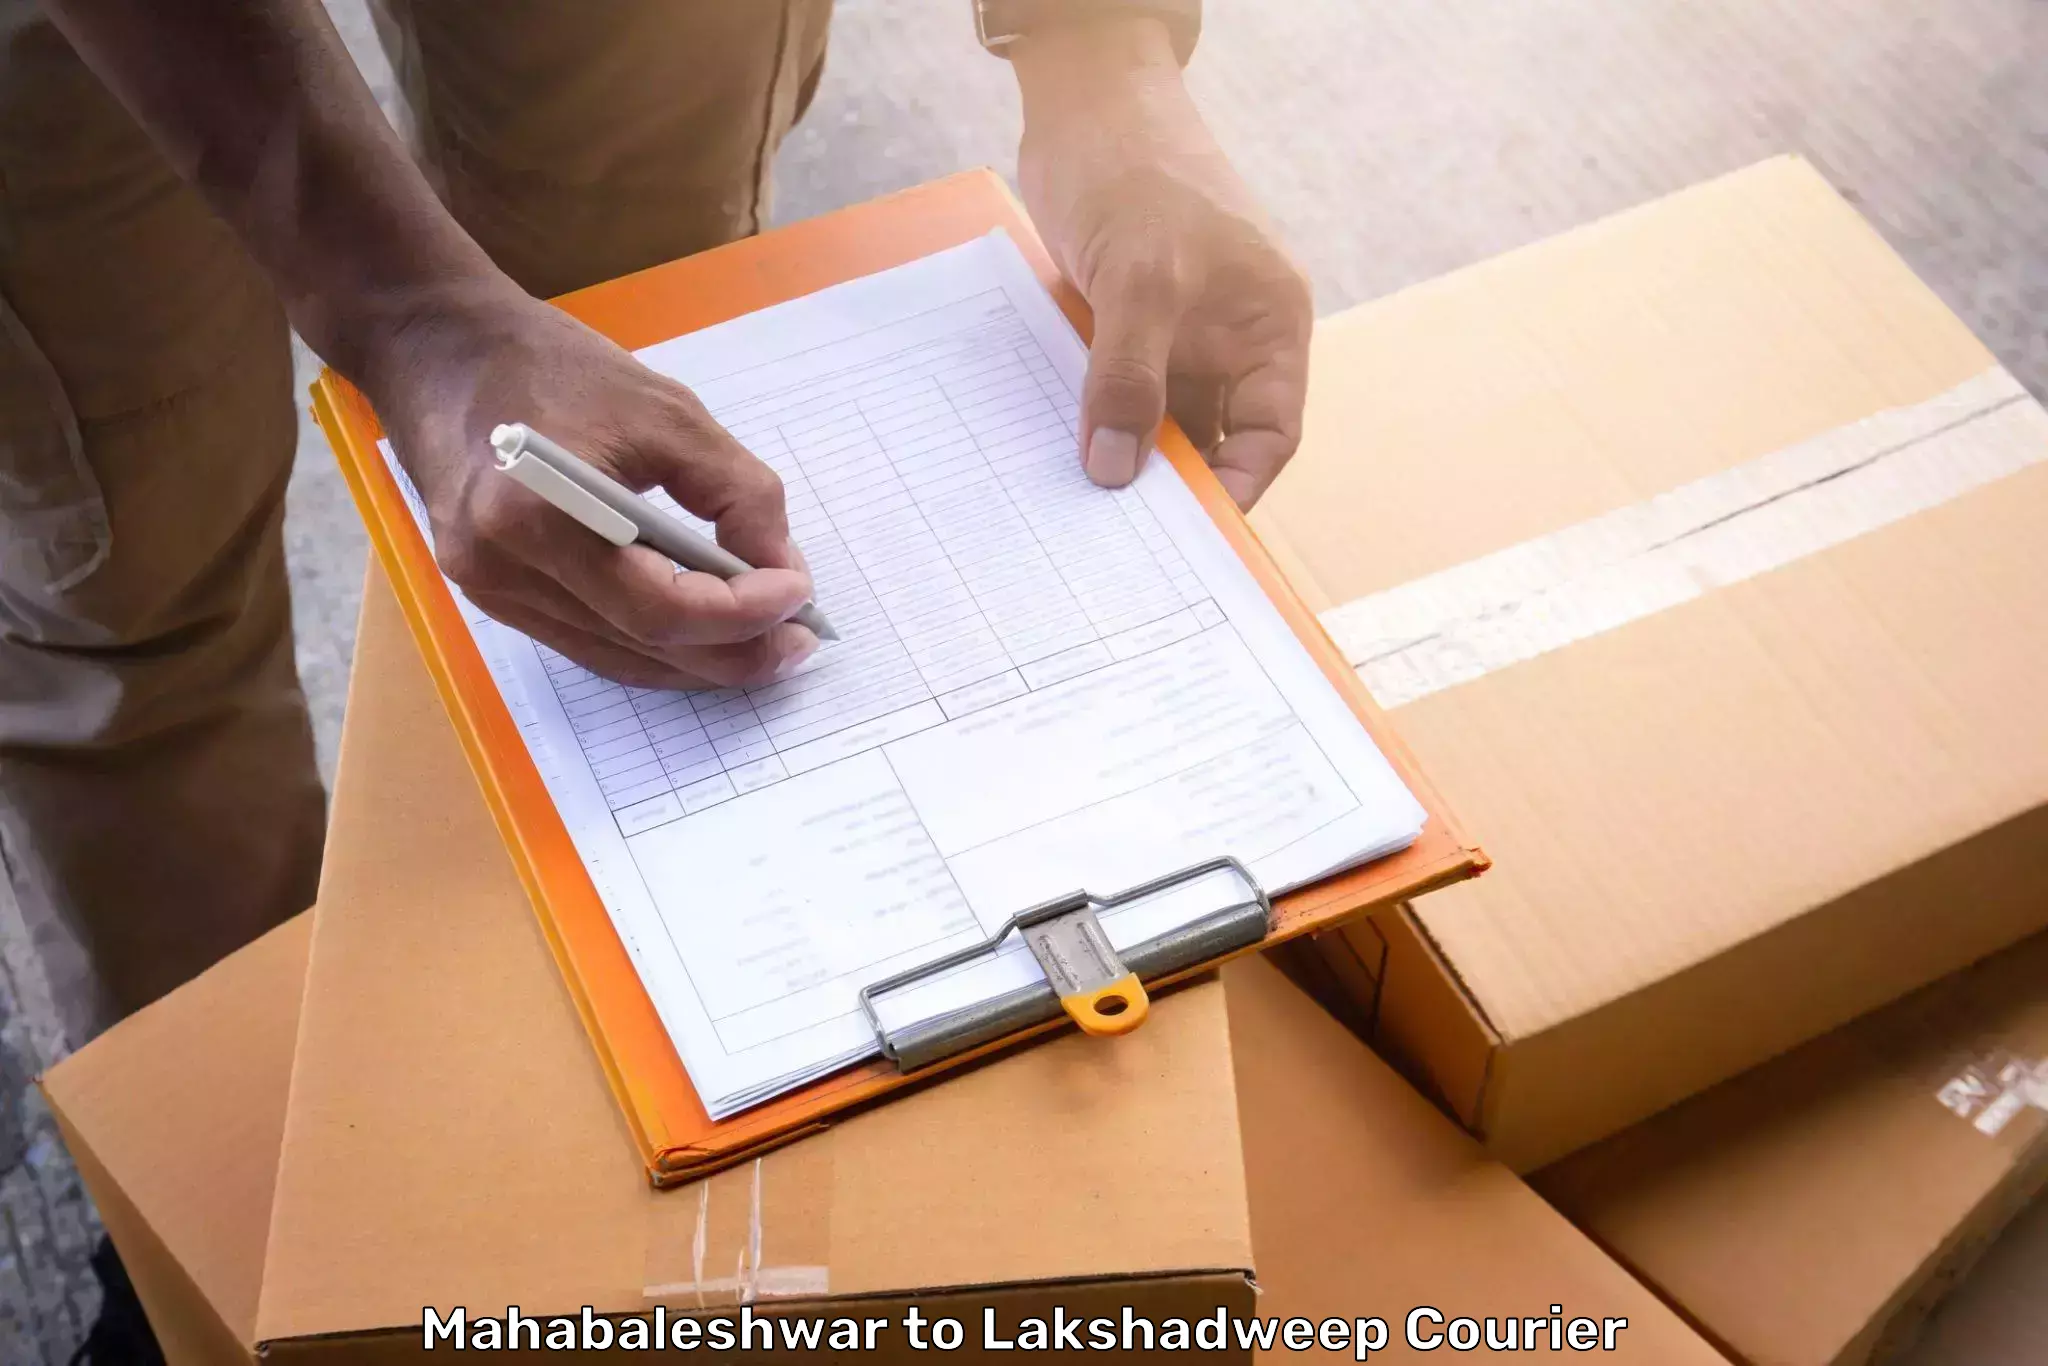 Baggage shipping experience in Mahabaleshwar to Lakshadweep